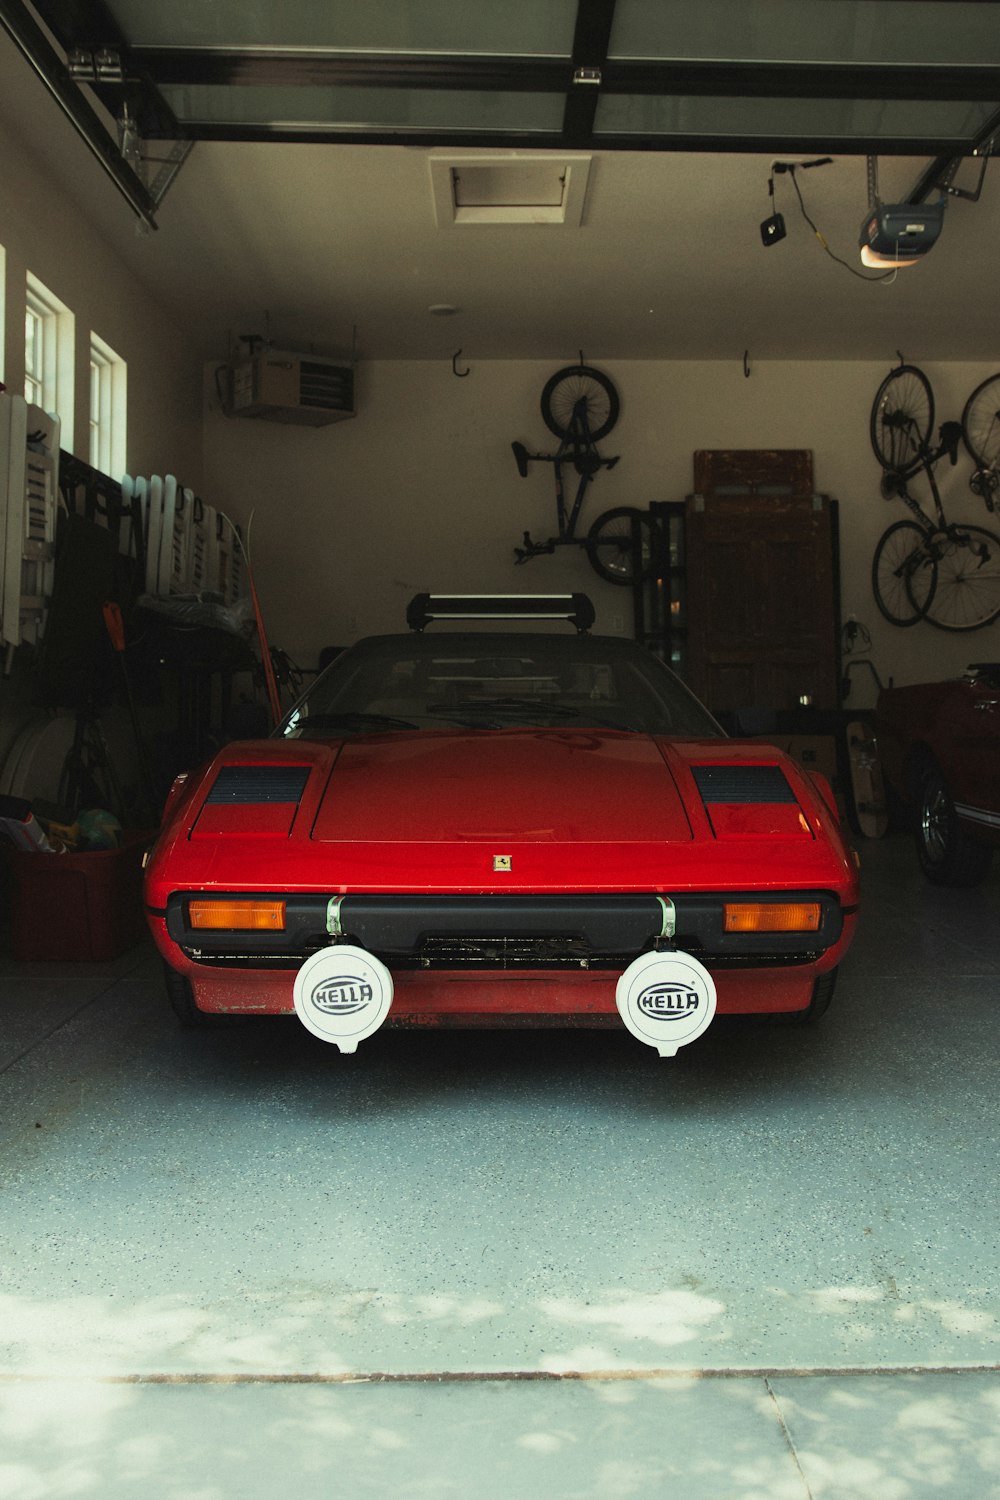 red chevrolet camaro parked in garage